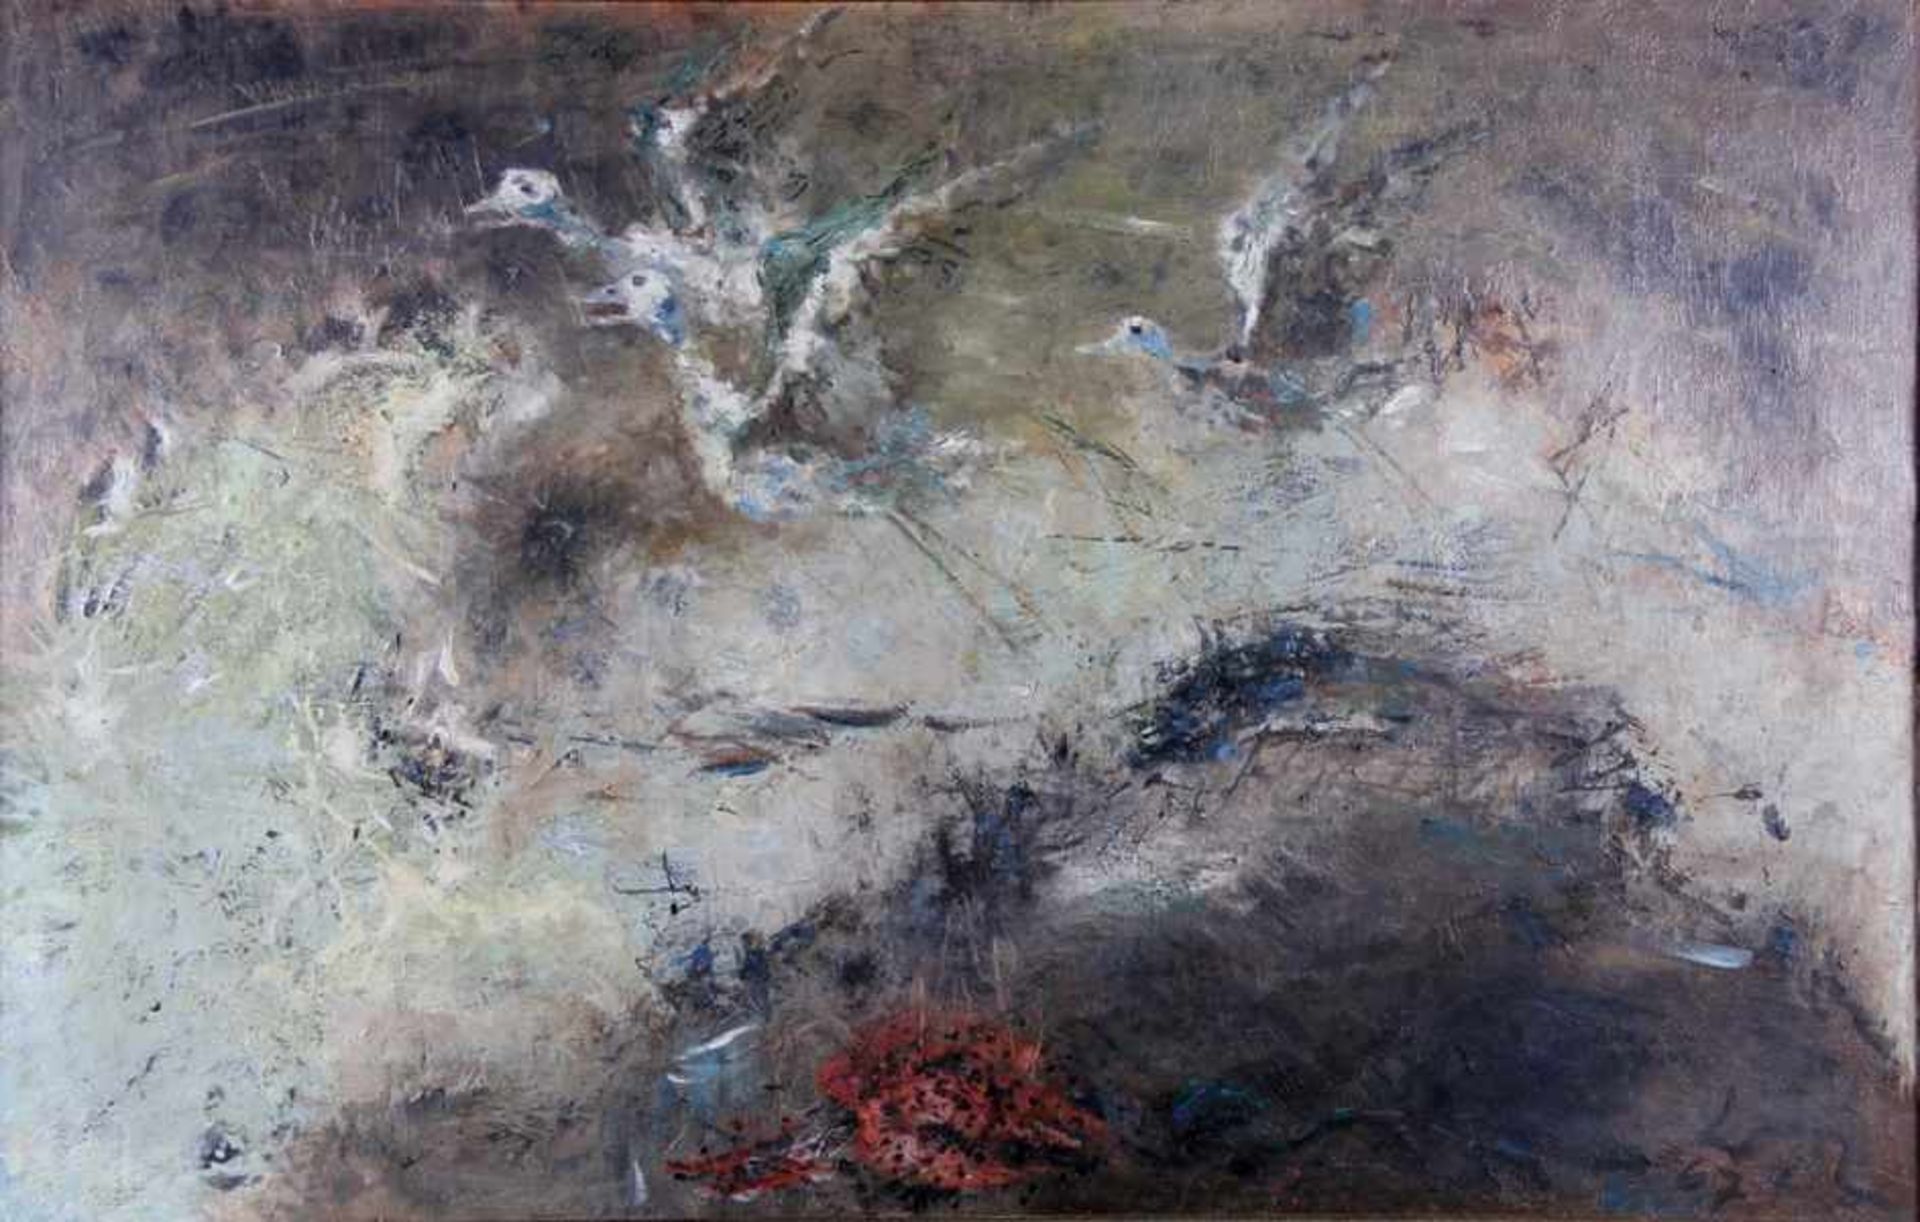 Lederer, Walter1923-2003, Strand I., auffliegende Vögel mit weißem Gefieder und langen Beinen vor